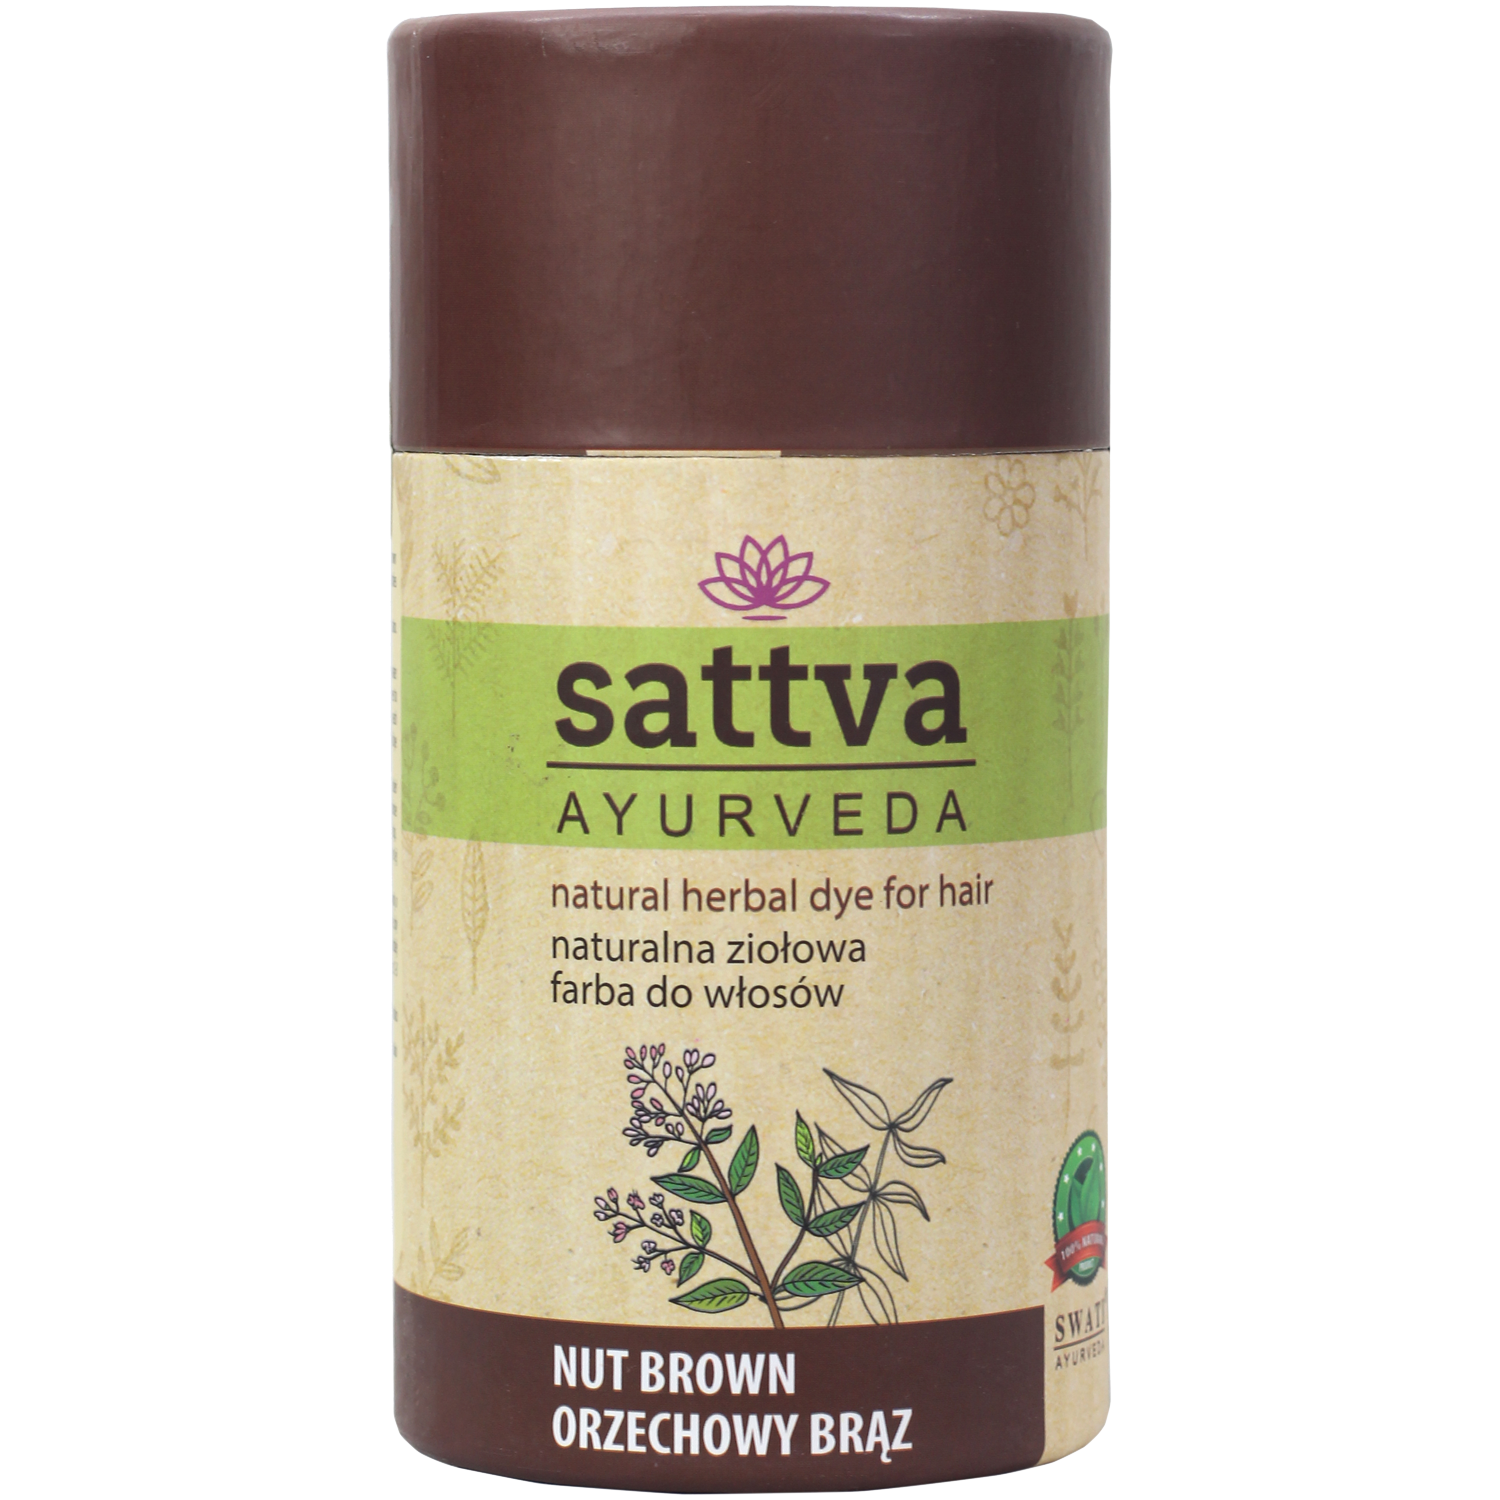 цена Sattva Ayurveda натуральная травяная краска для волос орех коричневый, 150 г